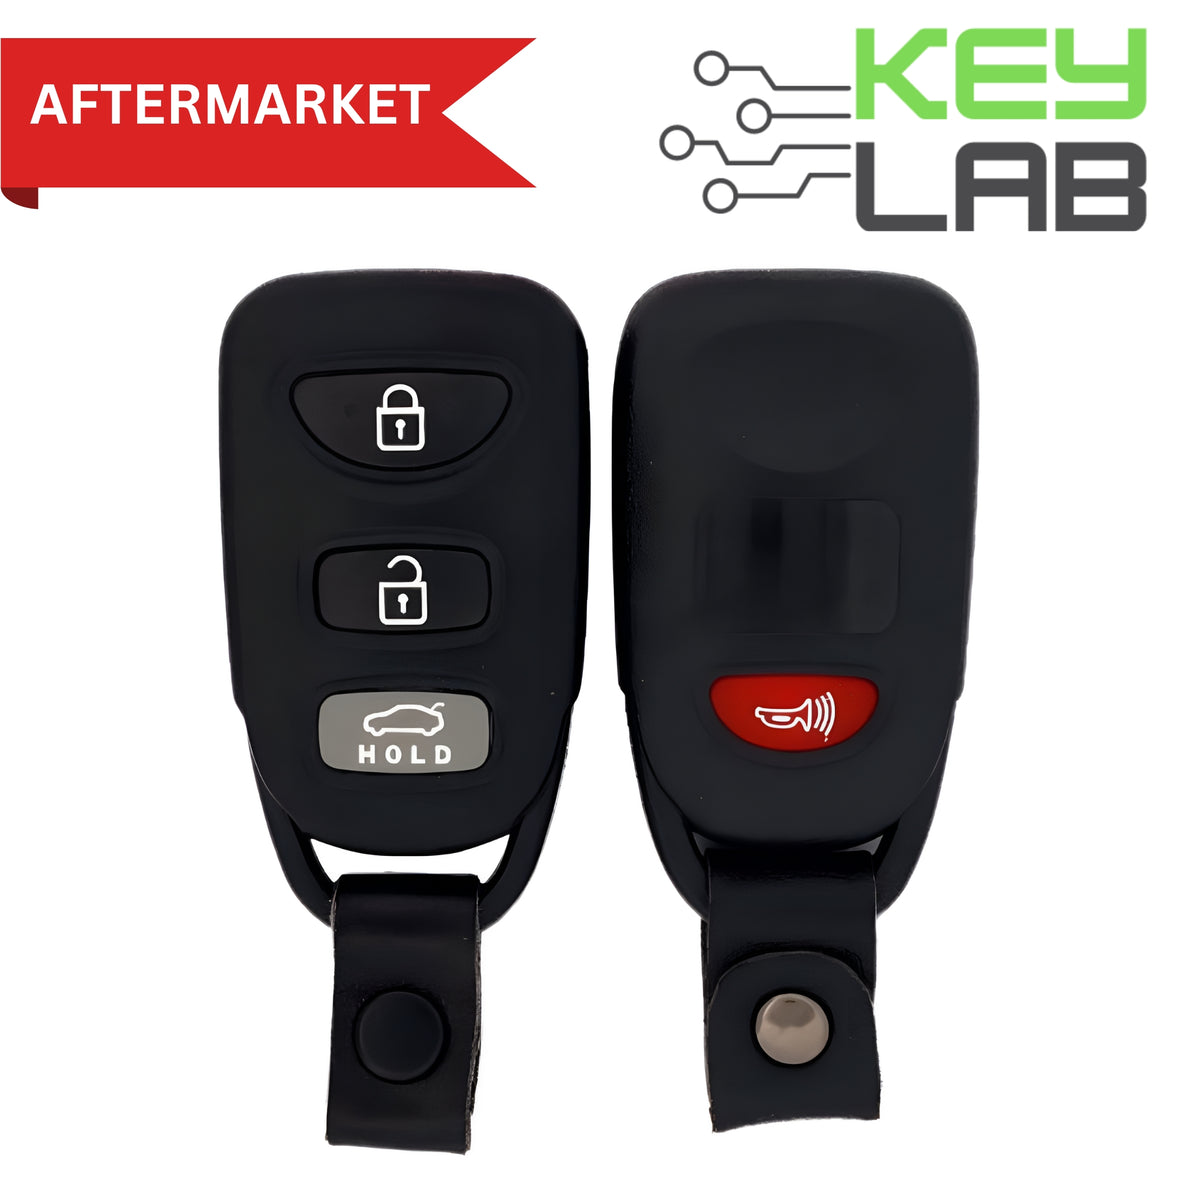 Hyundai Aftermarket 2016-2020 Elantra Keyless Entry Remote 4B Trunk FCCID: OSLOKA-423T PN# 95430-F2300 - Royal Key Supply